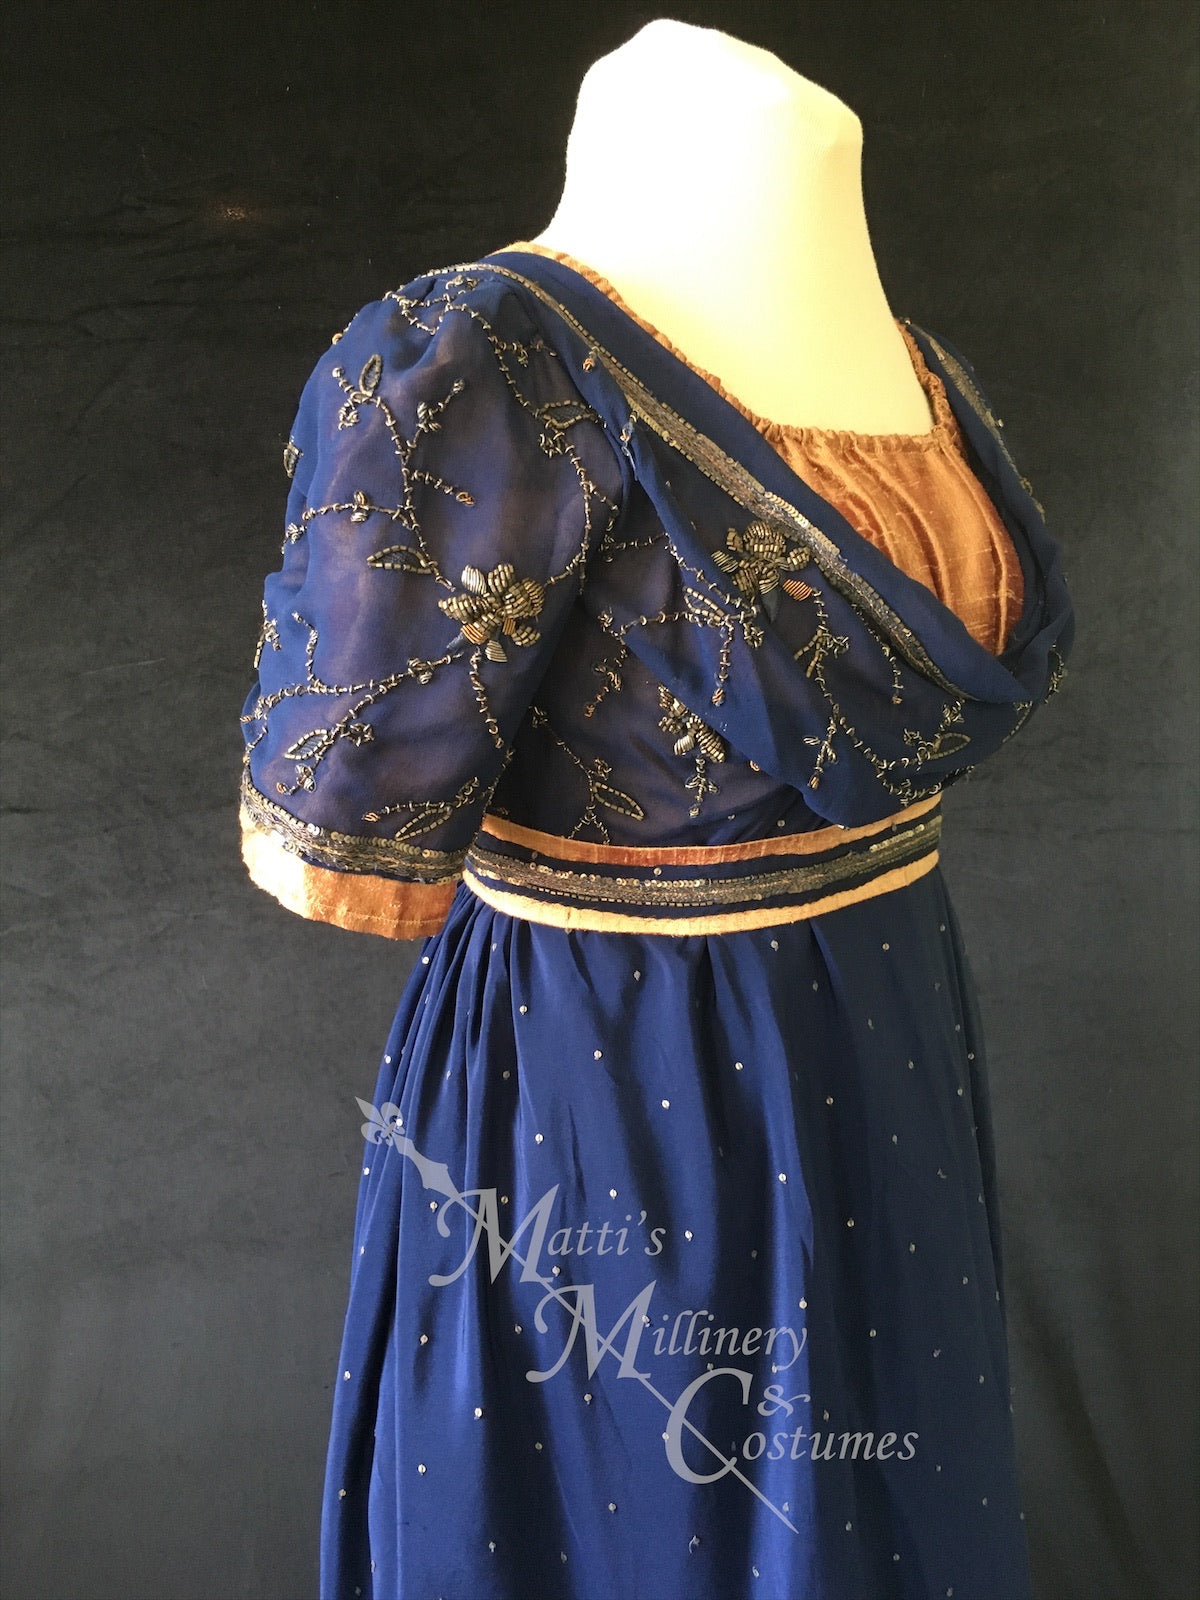 Jane Austen Regency Day Dress in navy blue and gold silk sari